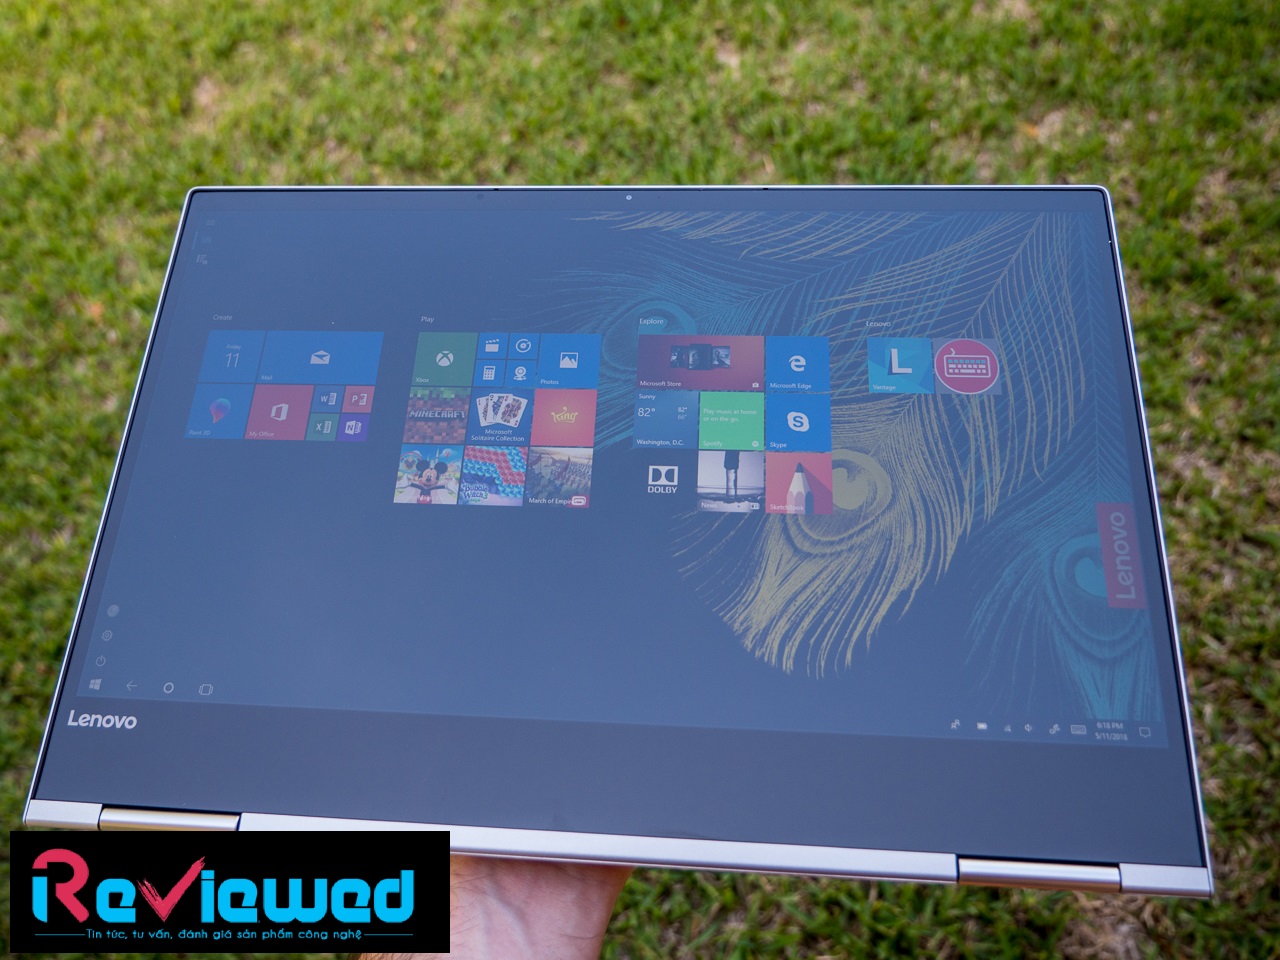 Đánh giá Lenovo Yoga 730-13IKB: Laptop 2 trong 1 rất đáng cân nhắc !, trang web tư vấn về laptop